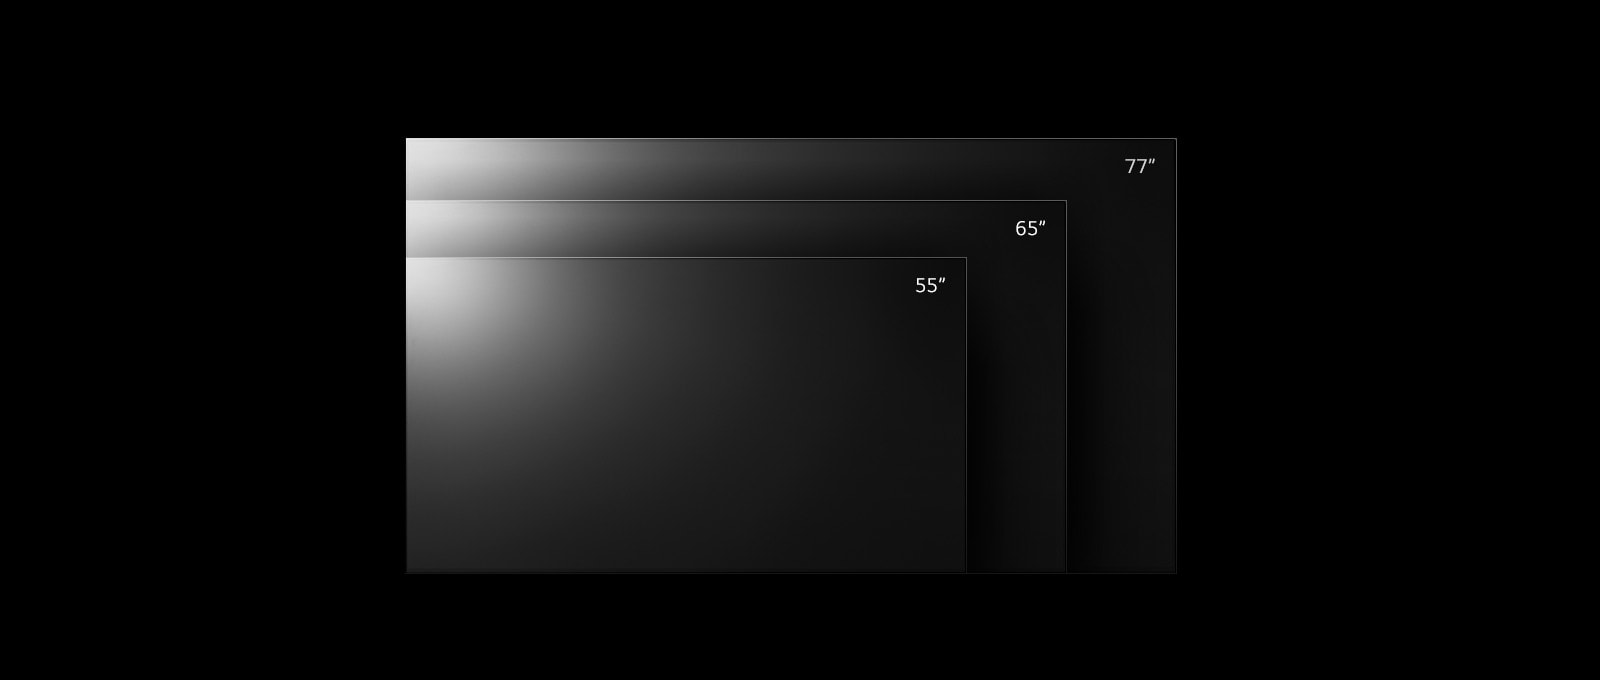 Телевизоры модели LG OLED G2 представлены в различных размерах от 55 до 77 дюймов.